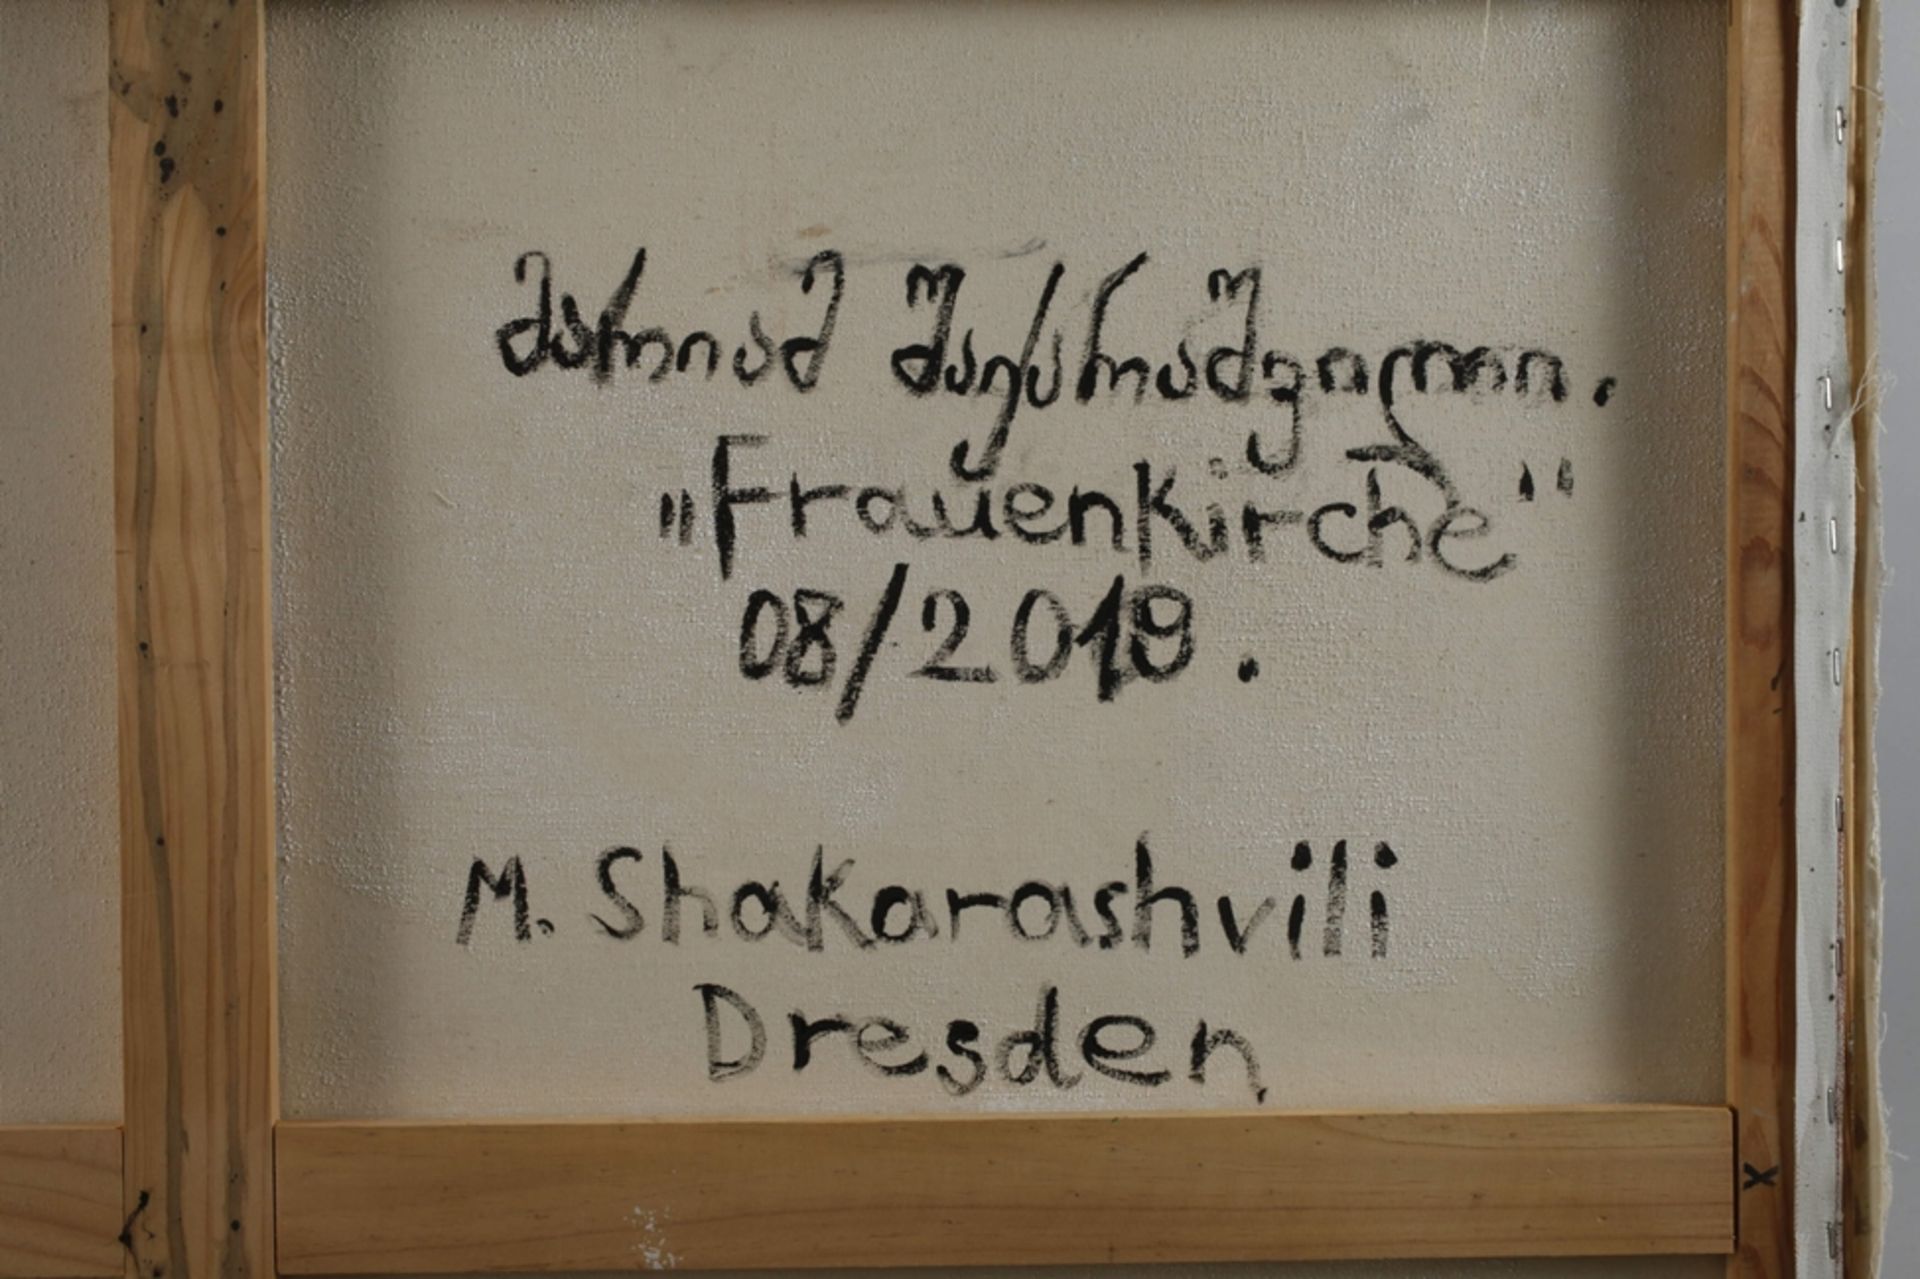 Mariam Shakarashvili, View of Dresden - Image 5 of 5